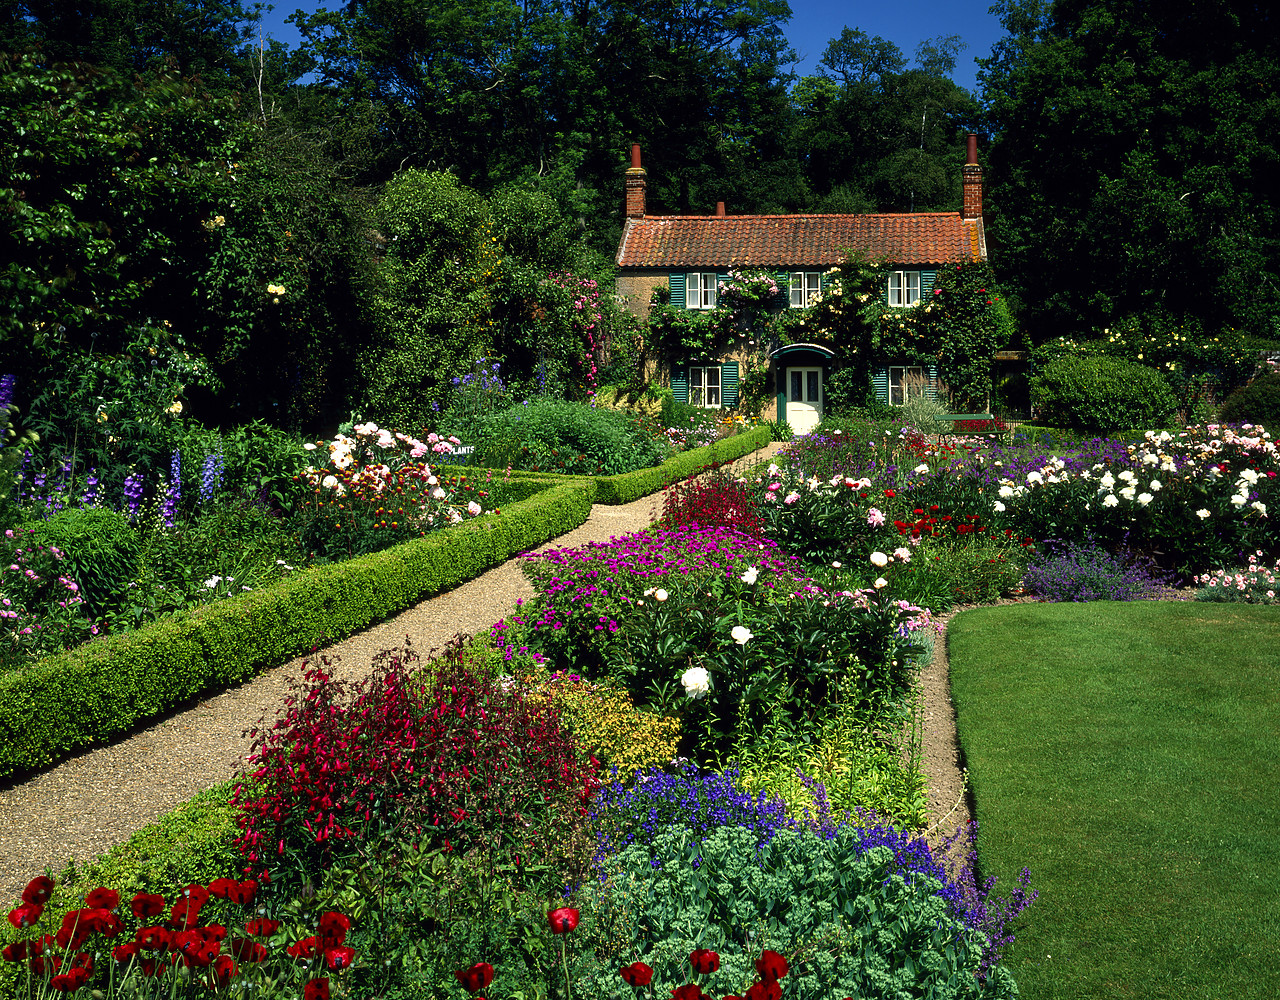 #955547-1 - Gardener's cottage, Hoveton Hall, Norfolk, England